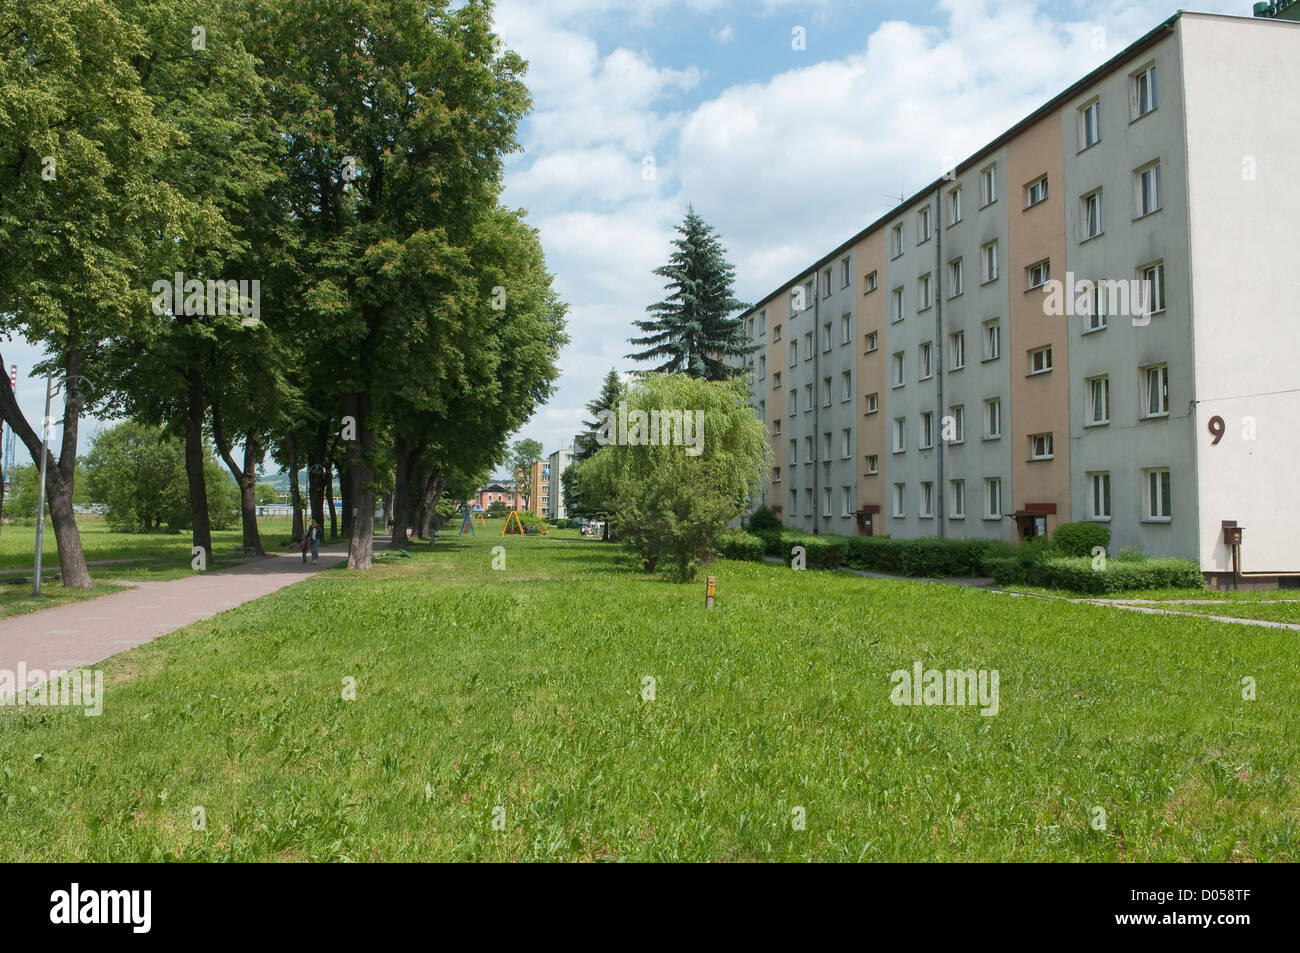 Osiedle XX Lecia - 60' and 70' housing estate in Wadowice, Poland. Stock Photo